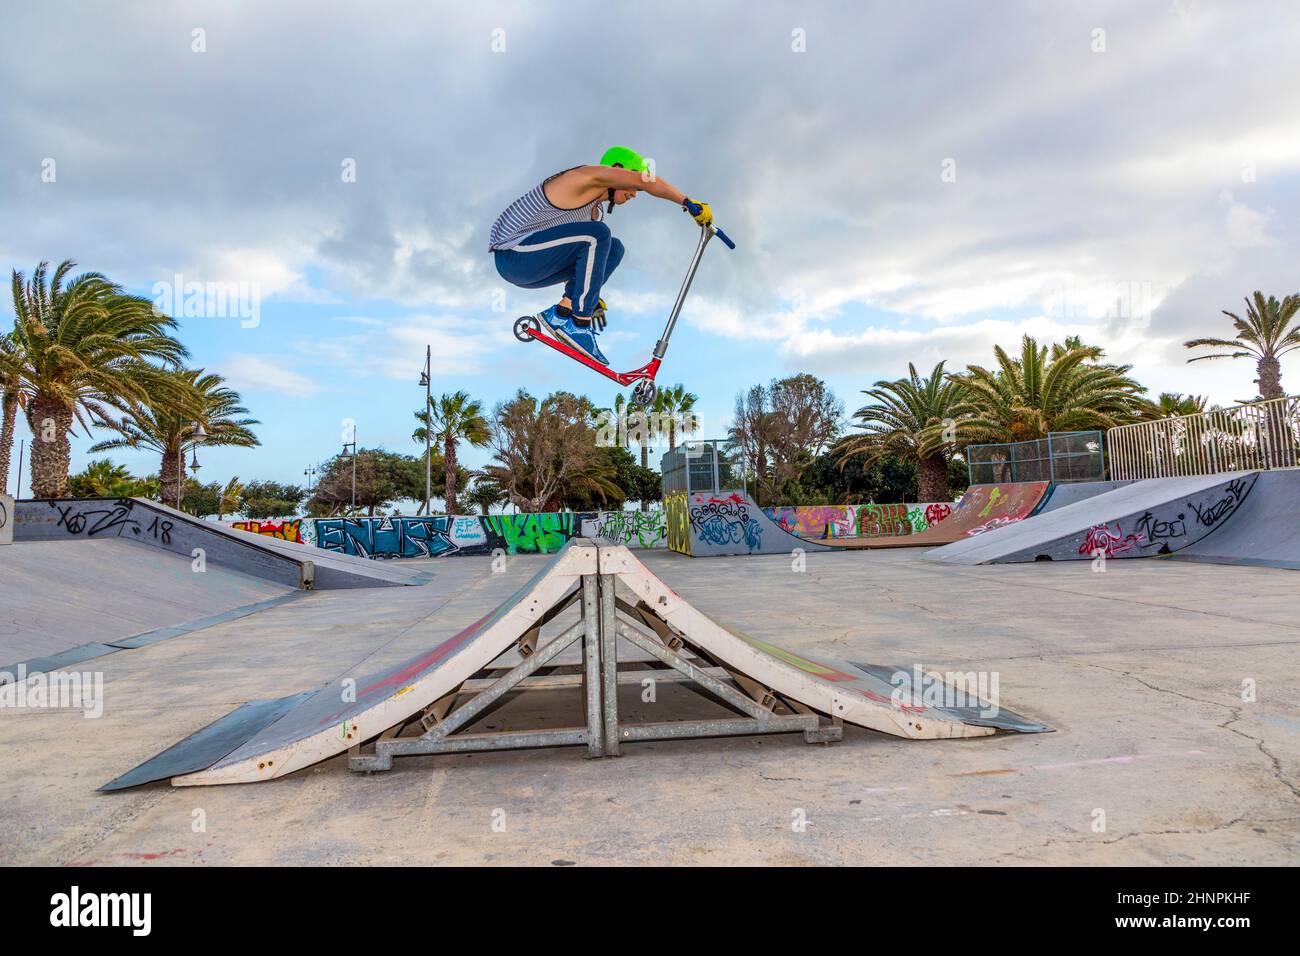 garçon sautant au skate park sur une rampe Banque D'Images